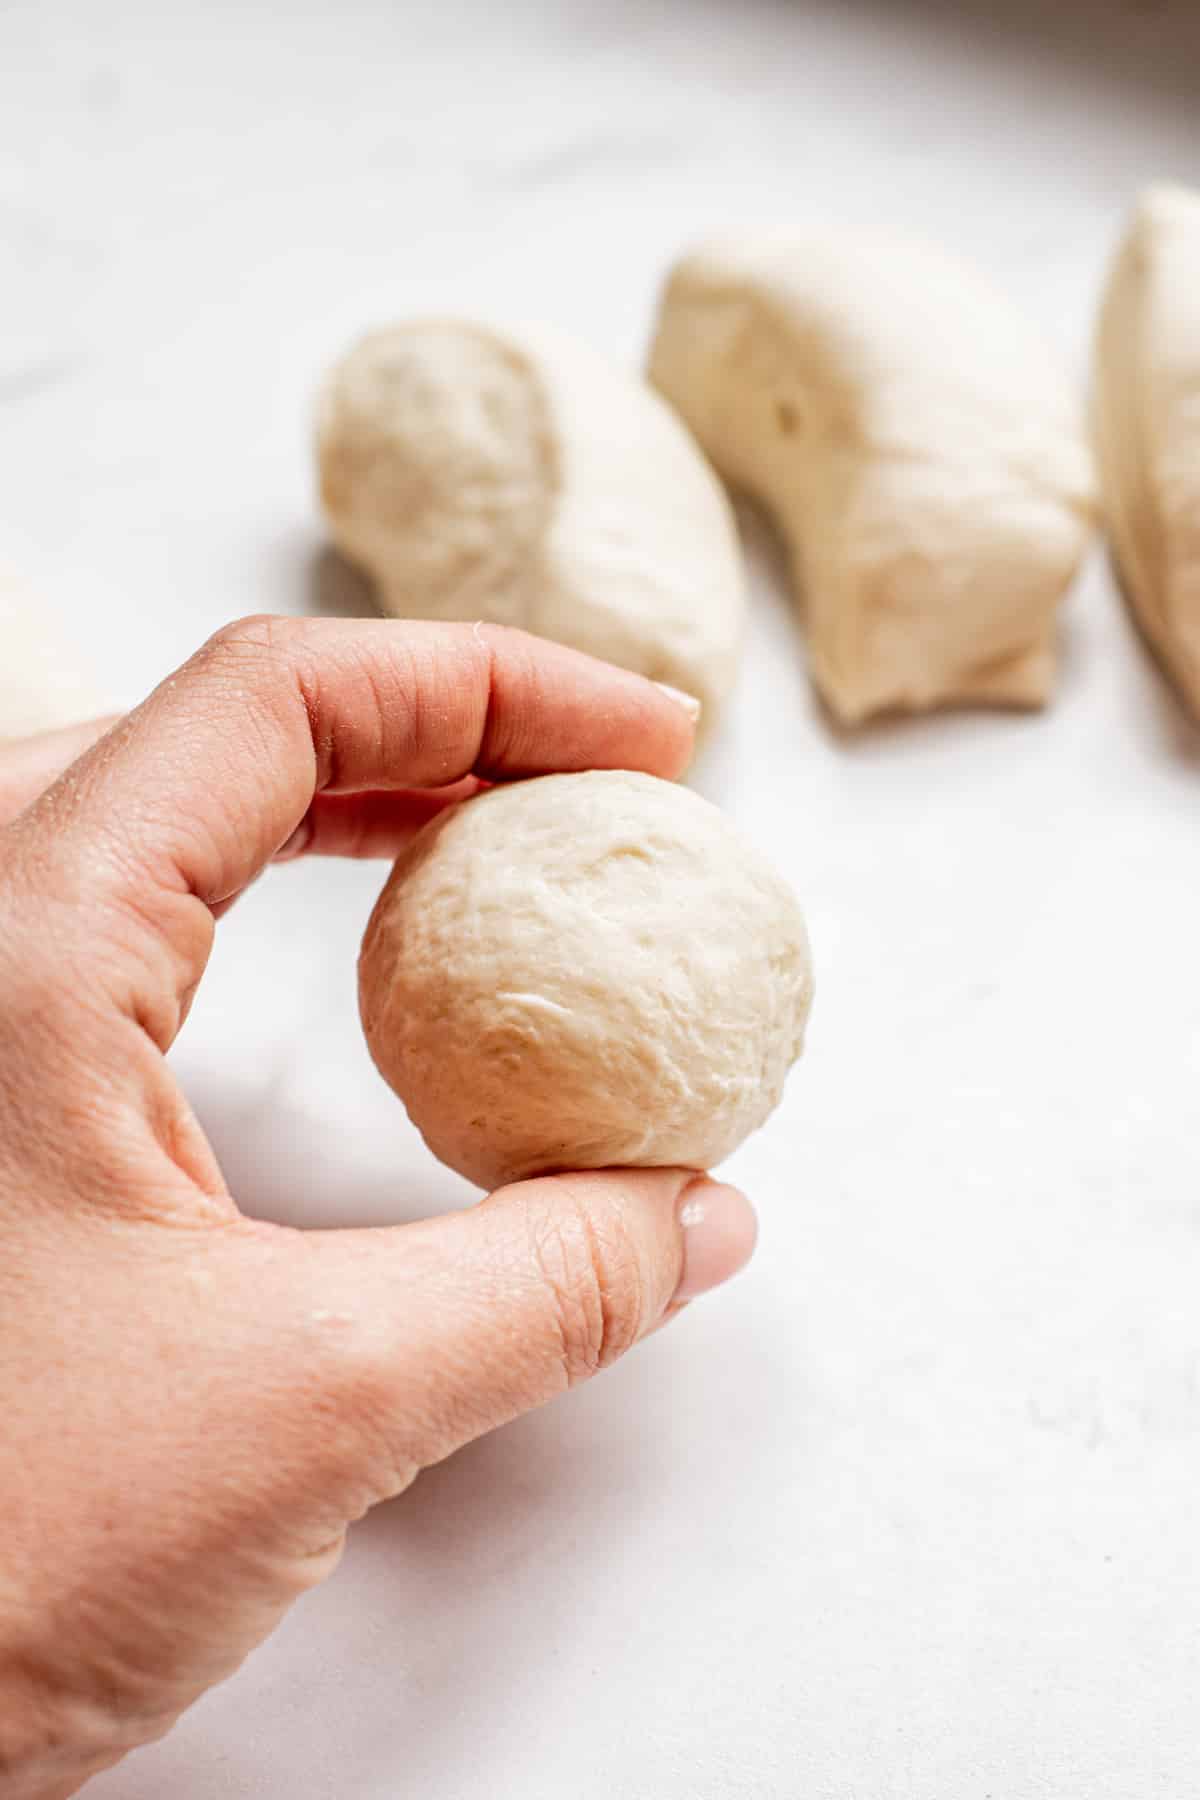 a hand holding a dough ball.